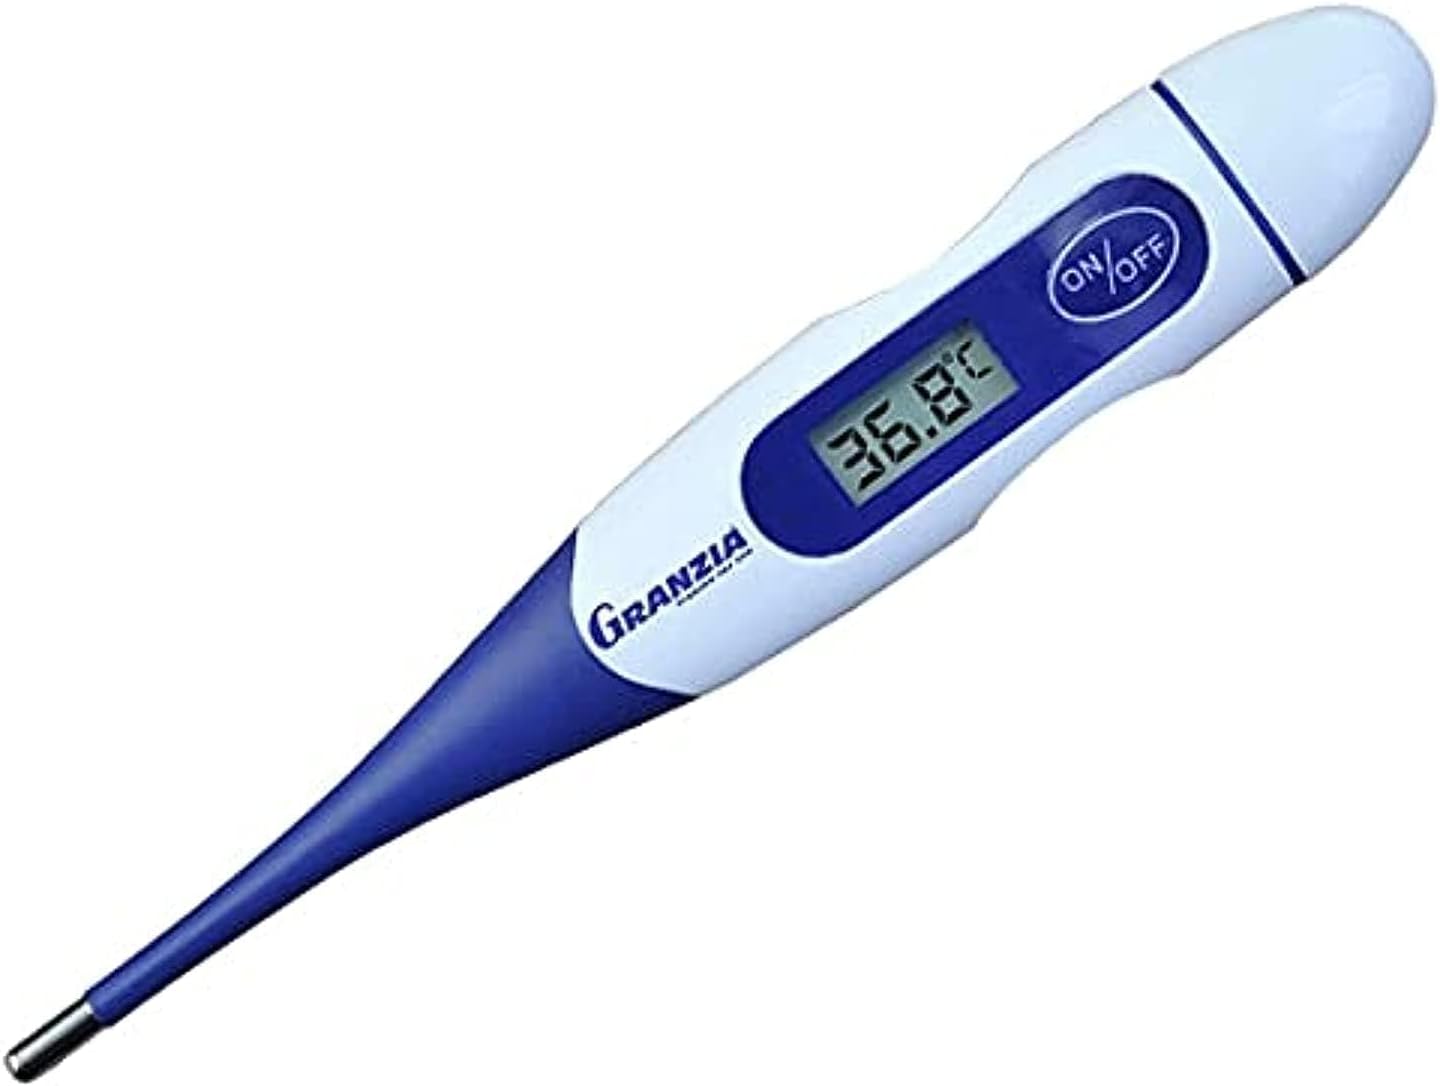 Granzia GT-04 Digital Thermometer - Blue